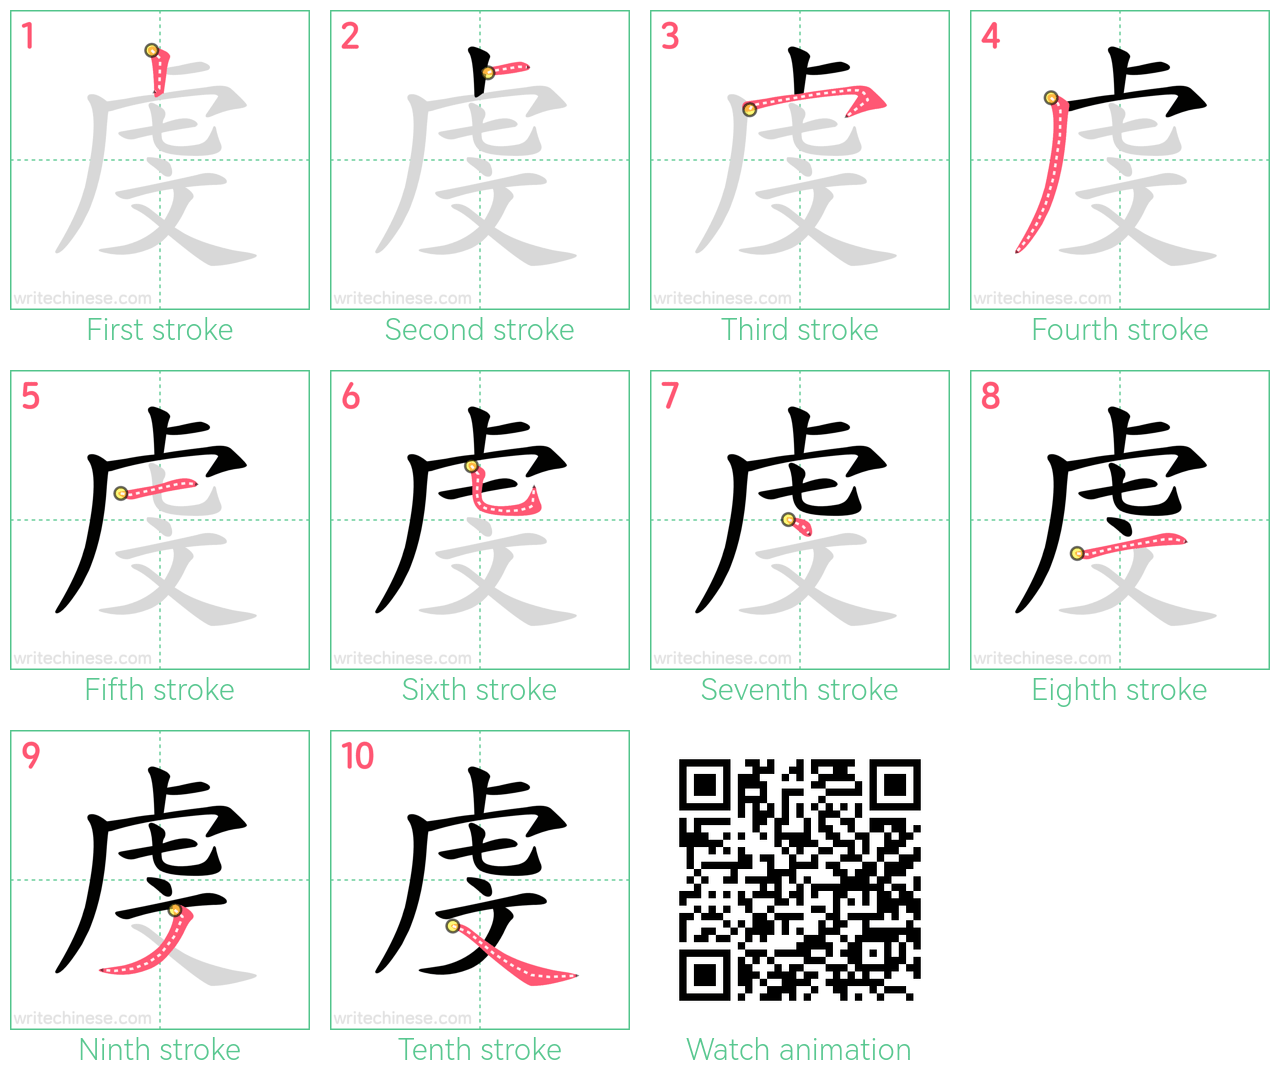 虔 step-by-step stroke order diagrams